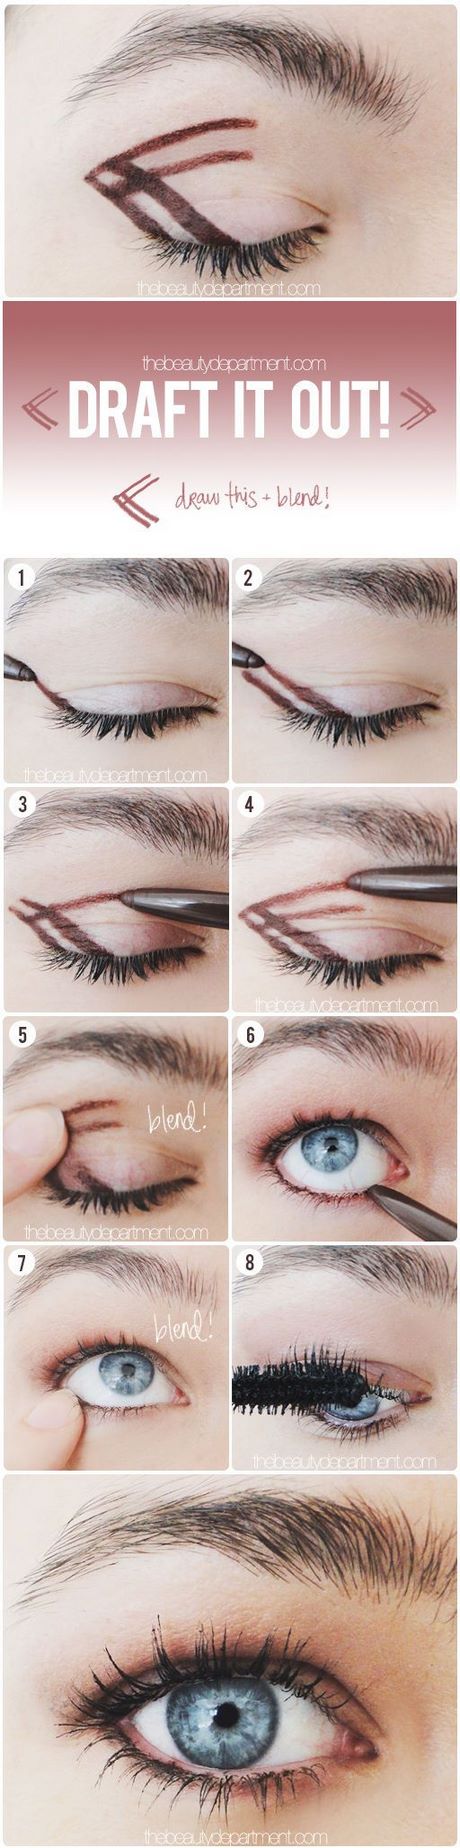 Smokey eyes make-up tips